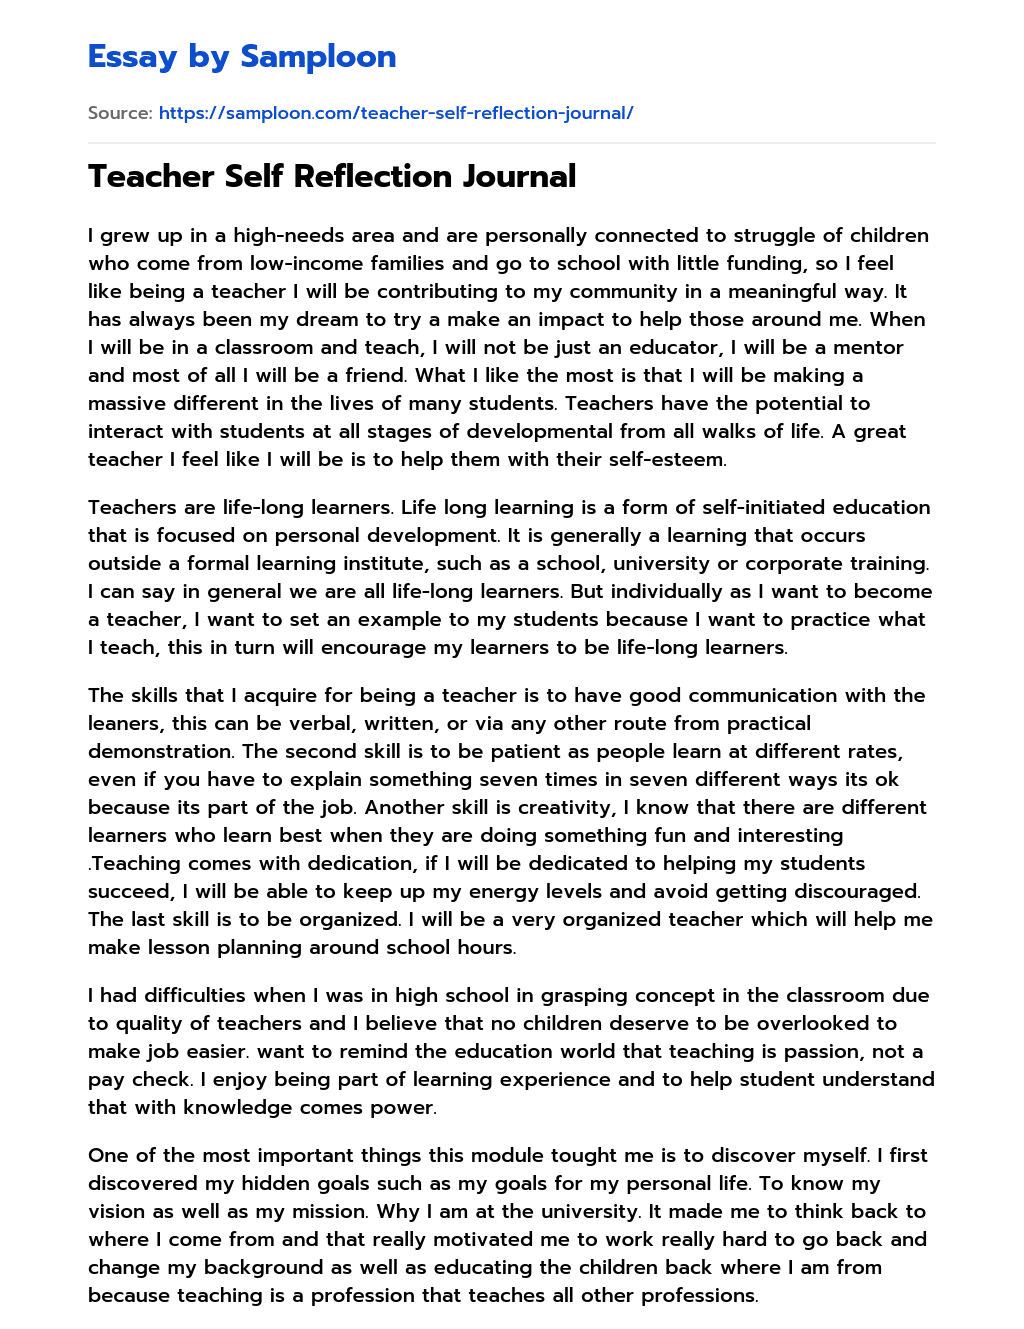 Teacher Self Reflection Journal essay